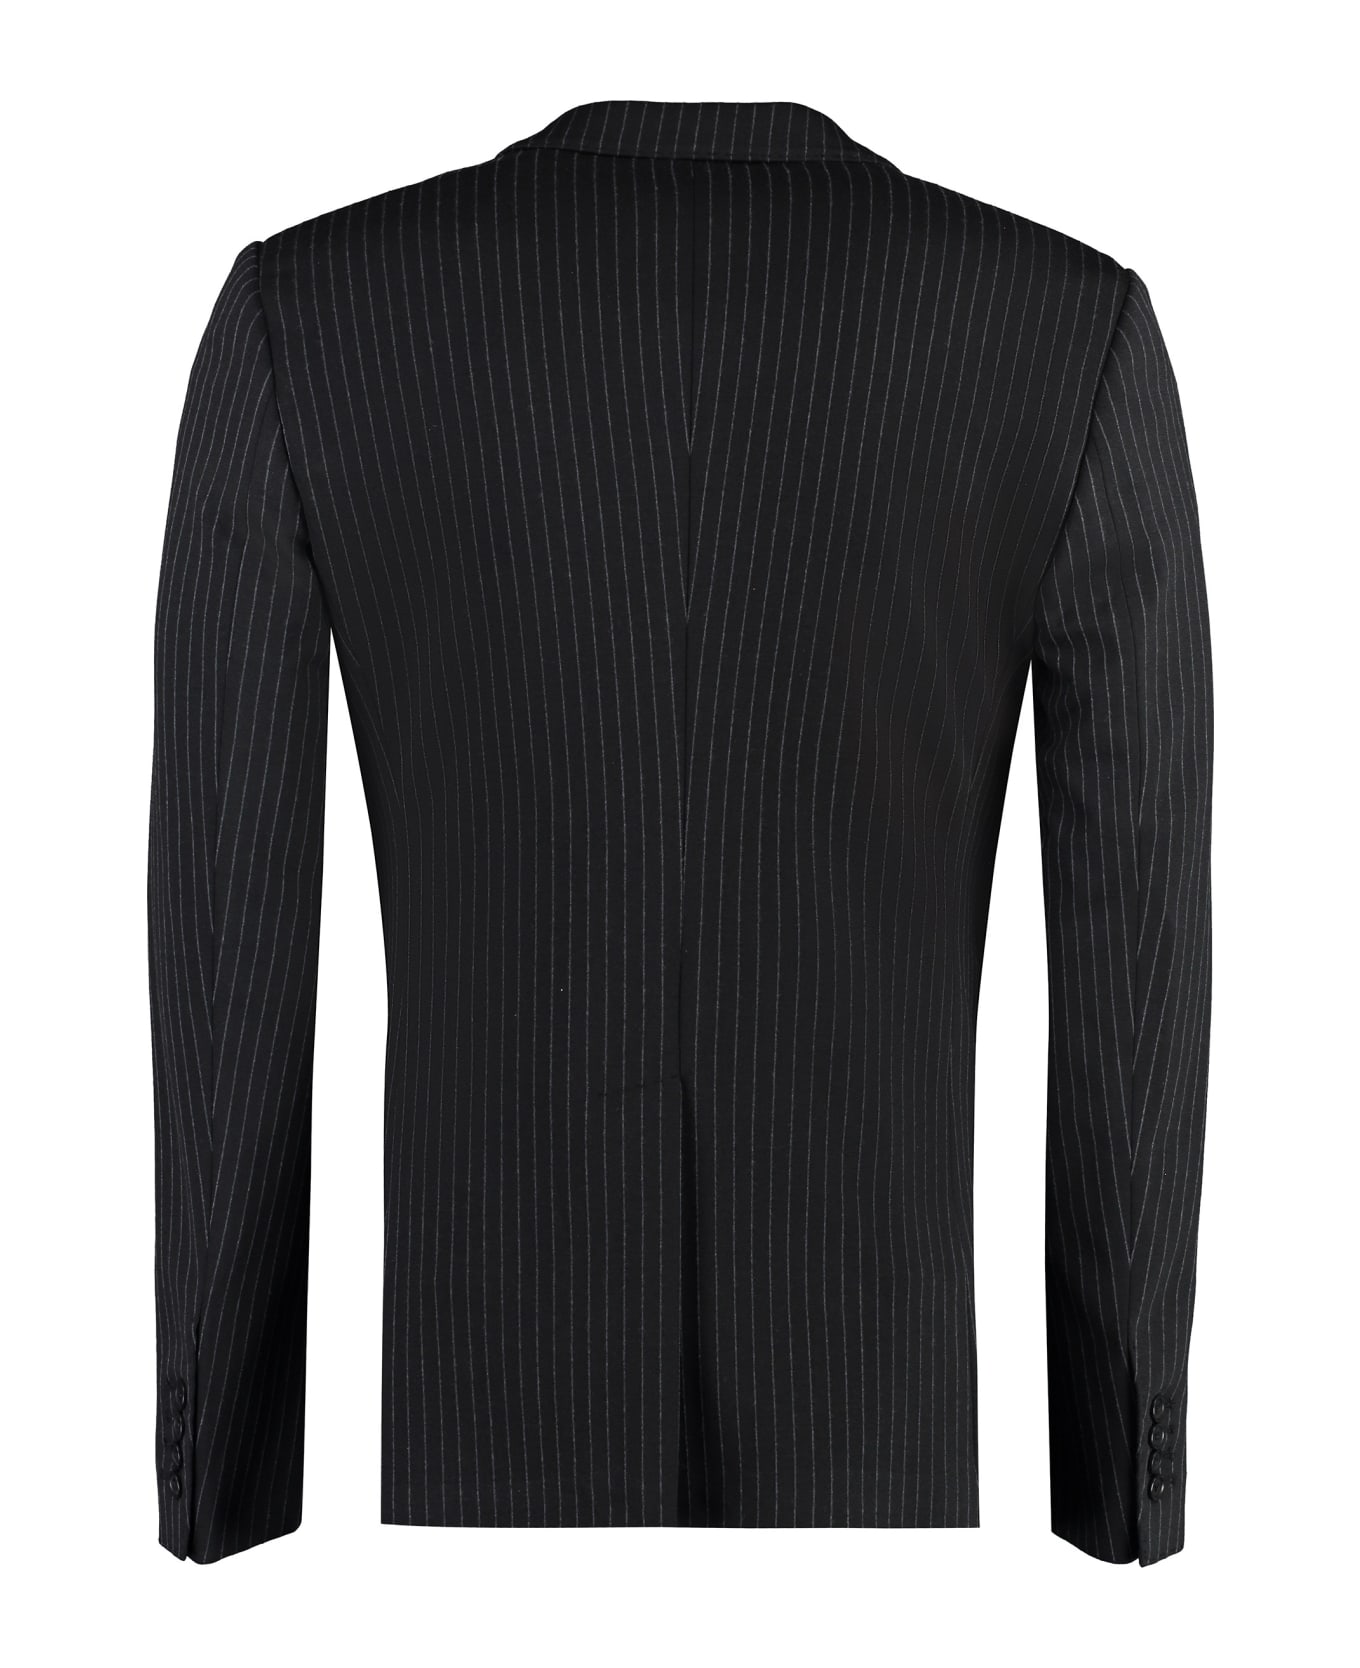 Dolce & Gabbana Portofino Single-breasted Two-button Jacket - black ブレザー